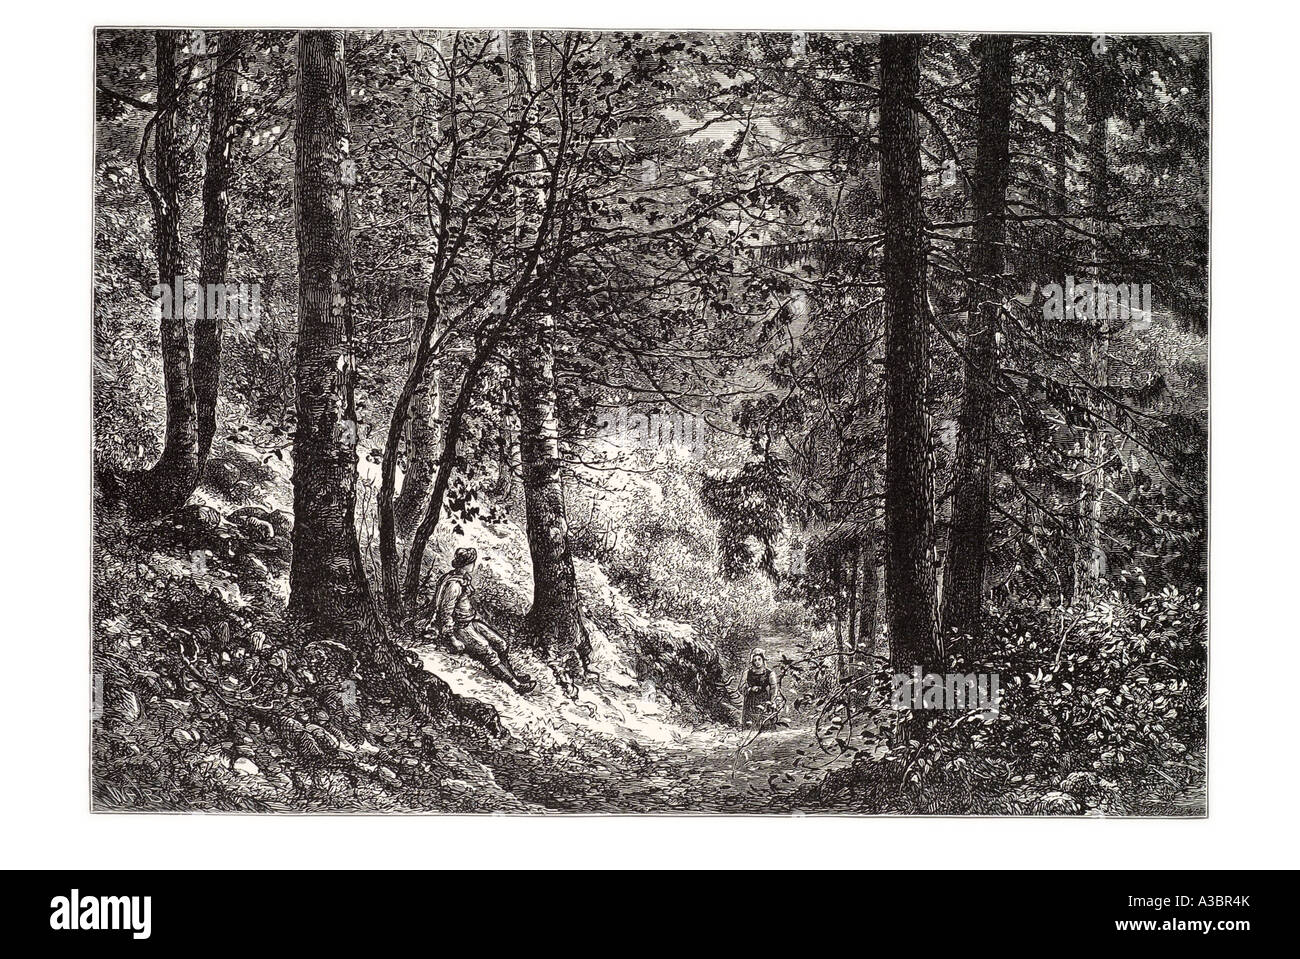 Jura France région française tranquille tranquille boisée forestiers reste bonne forest tree path s'asseoir attendre homme femme marche fourré arb Banque D'Images